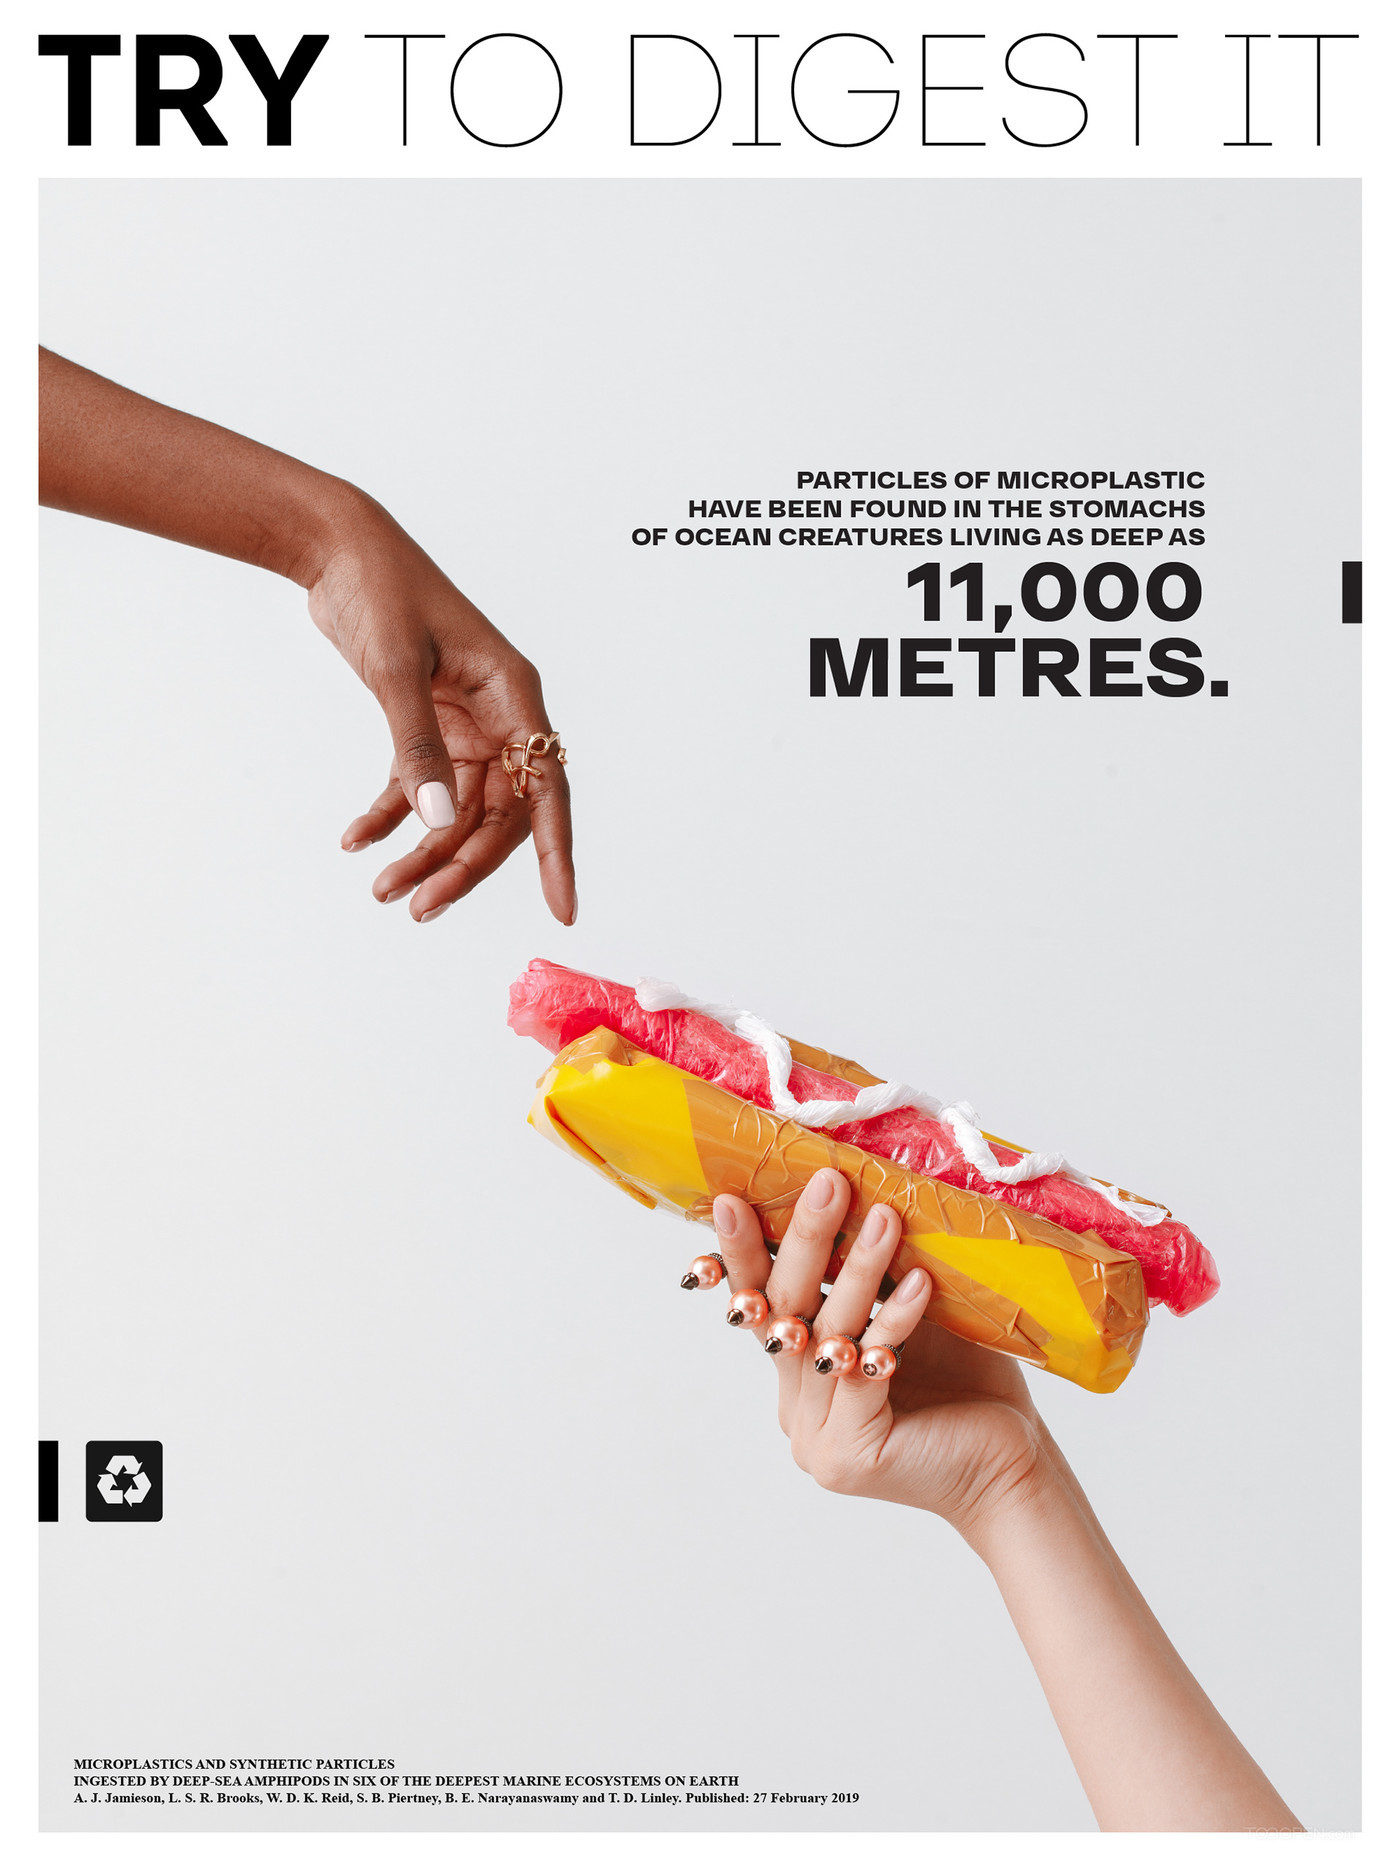 国外创意合理营养膳食广告海报设计欣赏-08